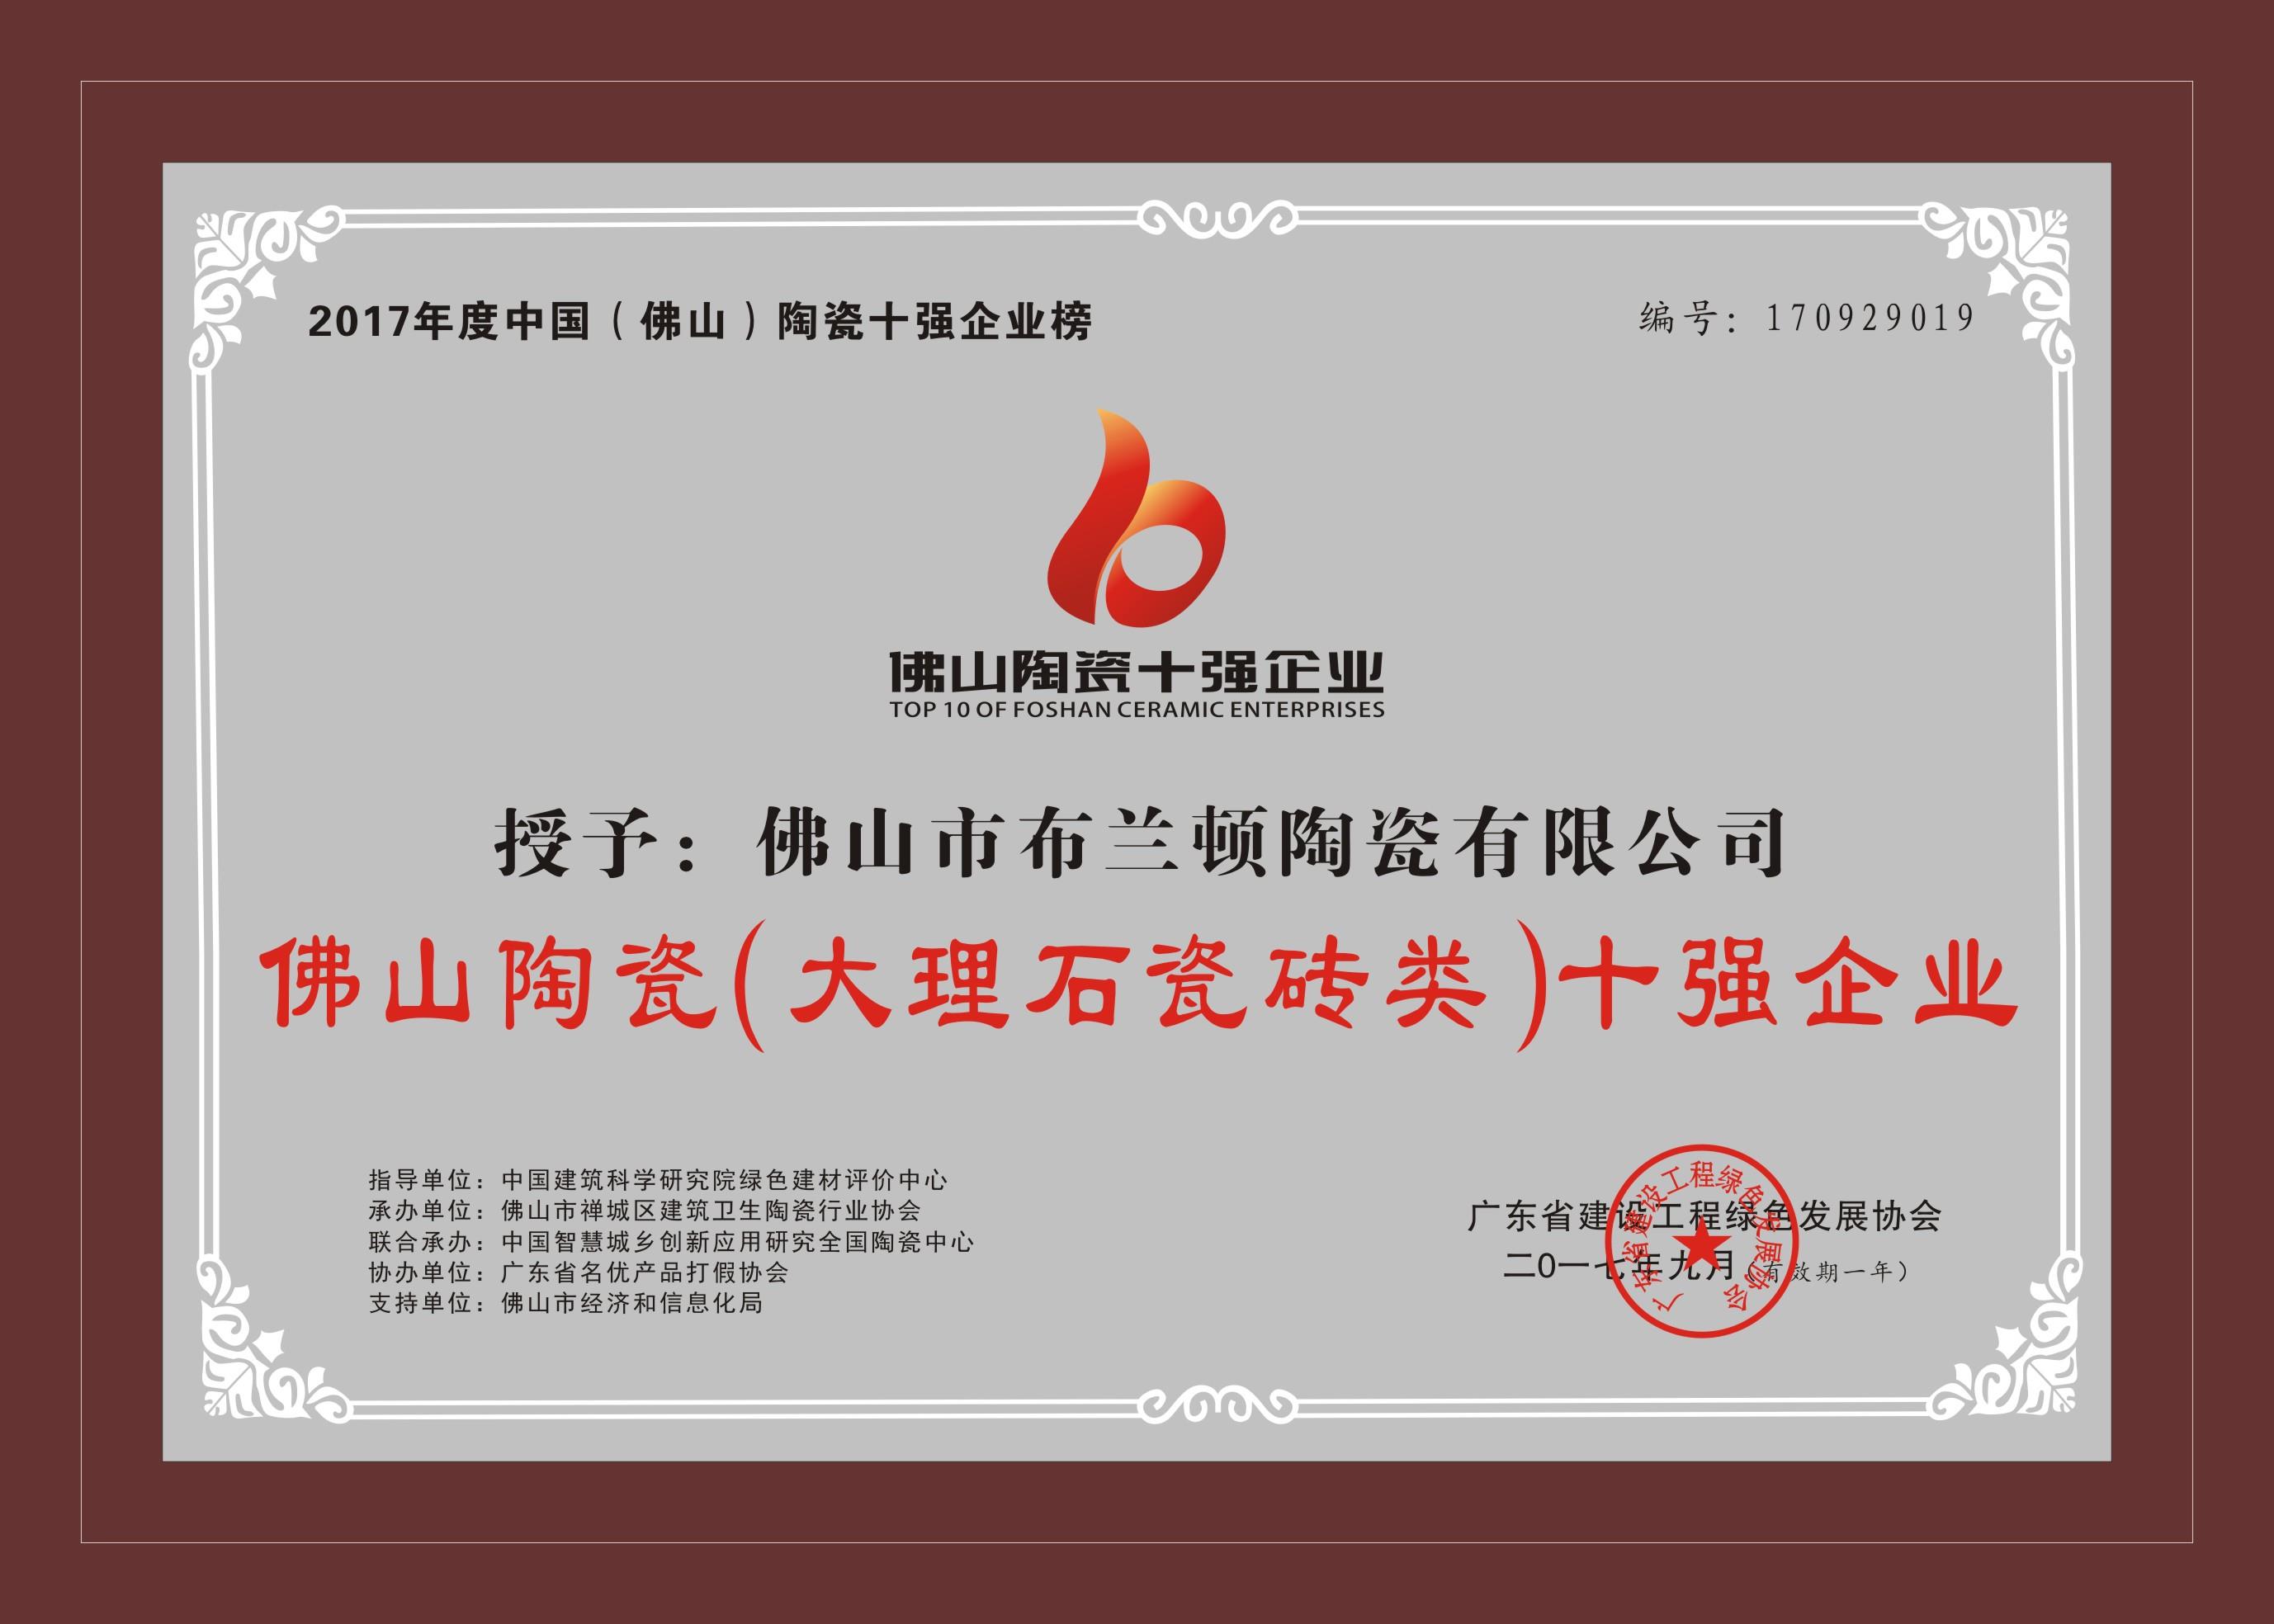 庆贺布兰顿陶瓷荣获“2017年度中国（佛山）陶瓷十强企业榜”